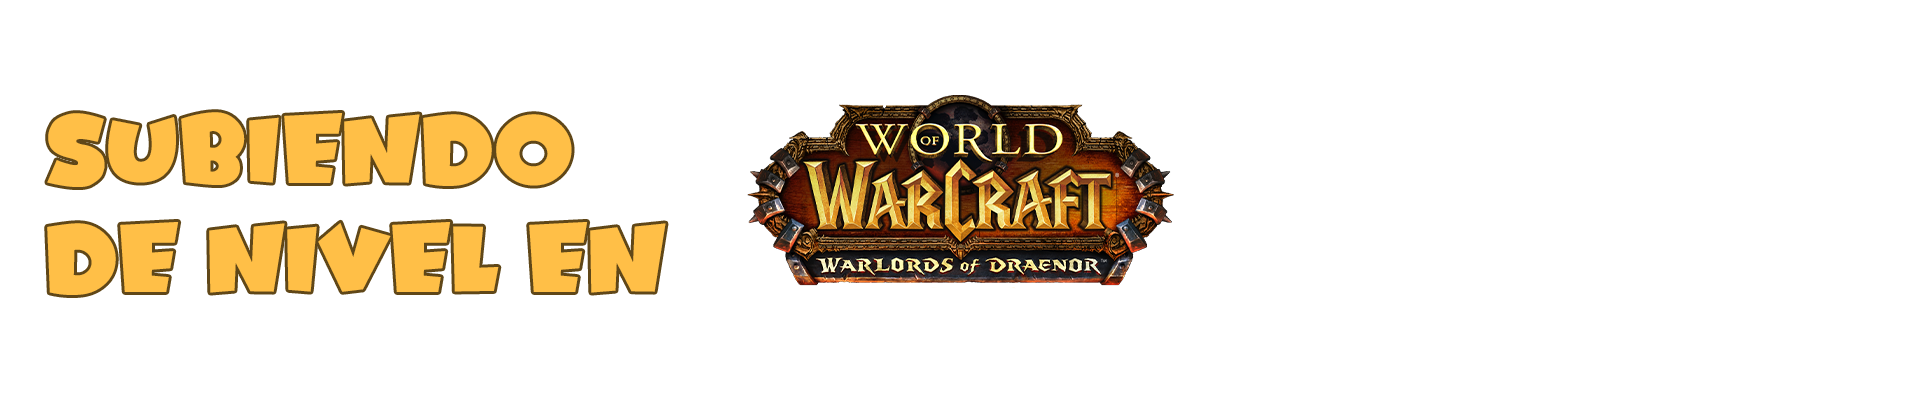 Subiendo de Nivel en World of Warcraft Warlords of Draenor